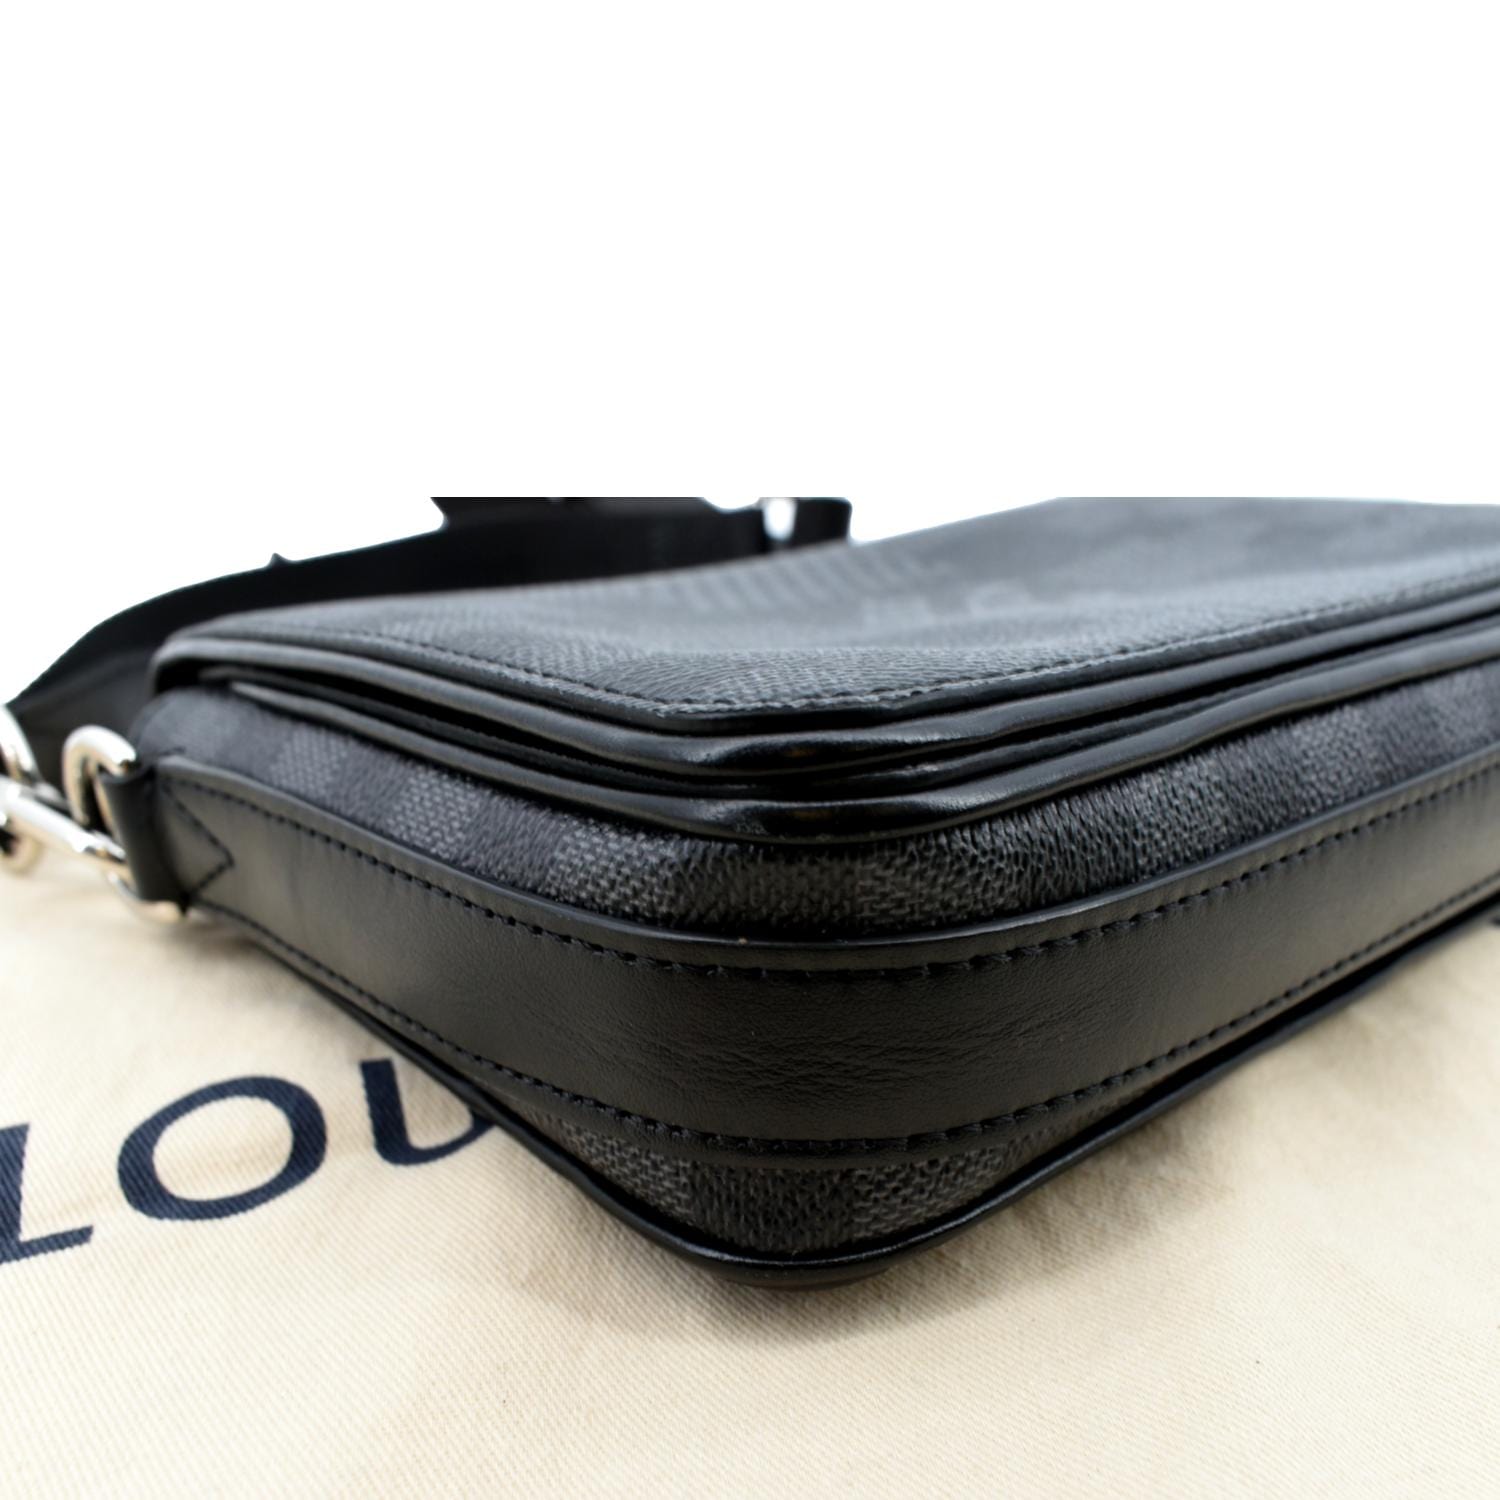 Louis Vuitton Studio Messenger Bag Limited Edition Damier Graphite 3D Blue  1302771